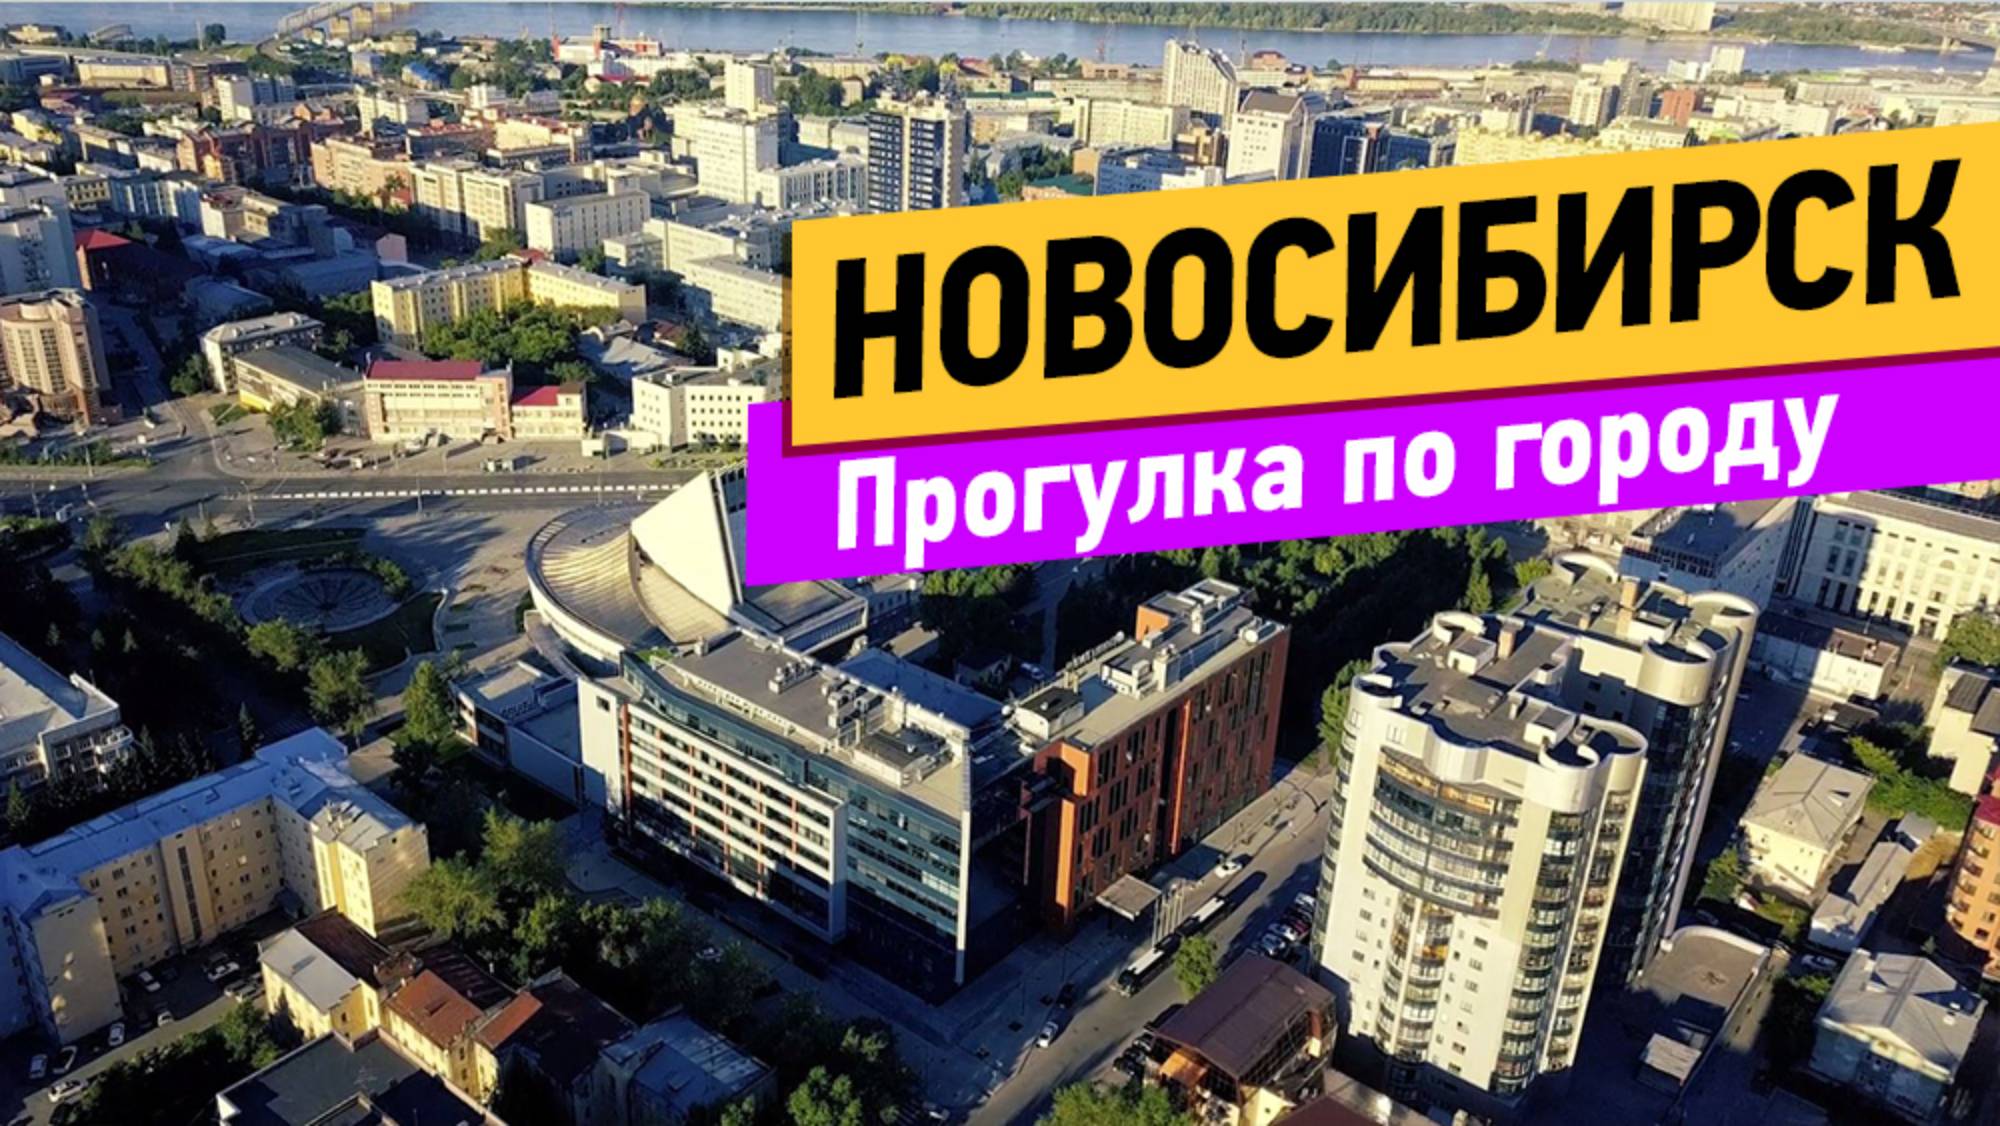 Новосибирск. Прогулка по городу